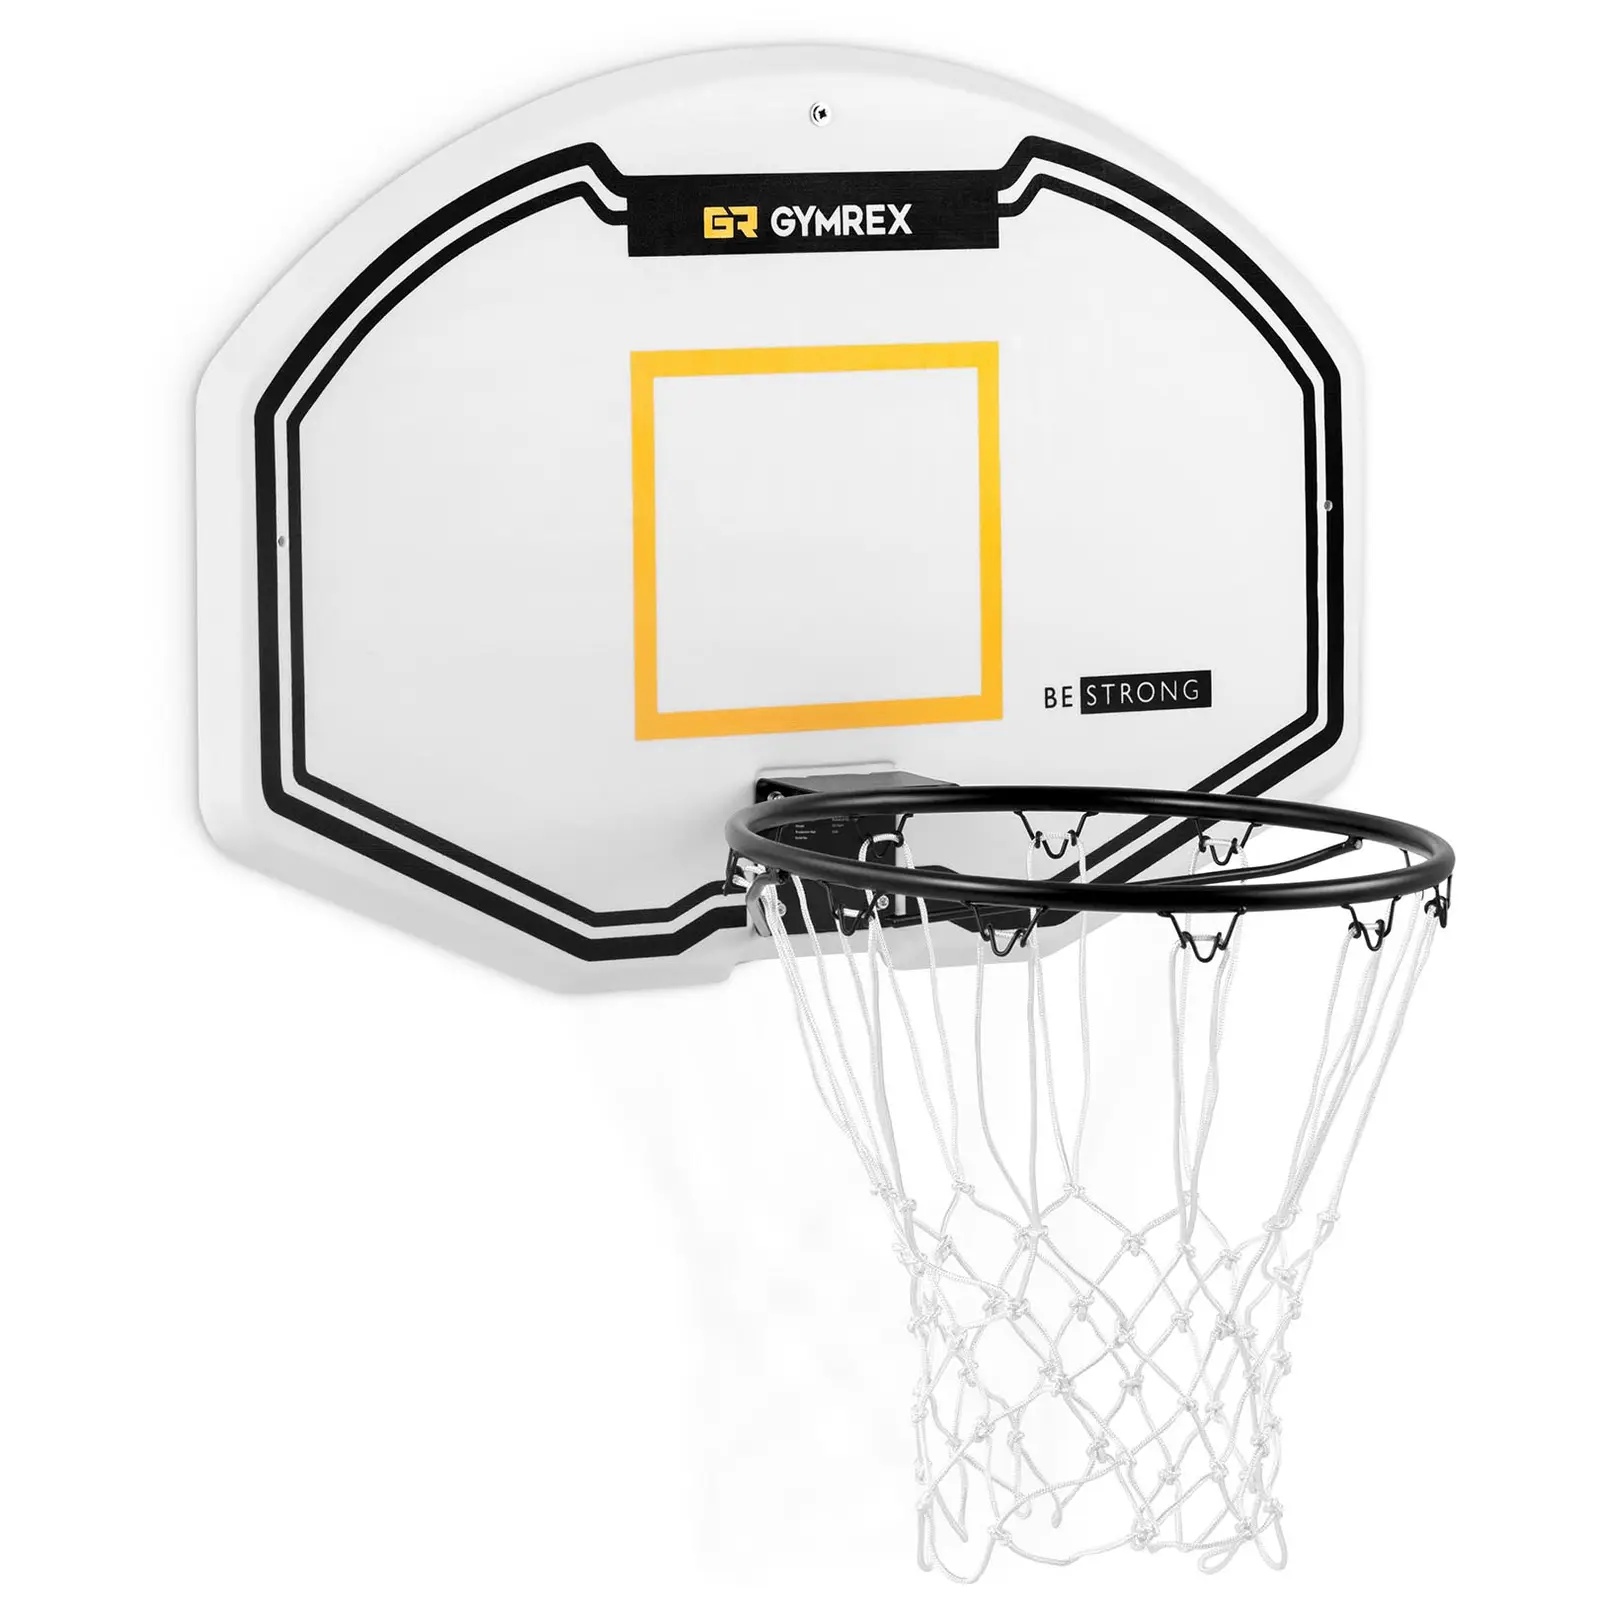 Košarkarska mreža - 91 x 61 cm - premer obroča 42,5 cm